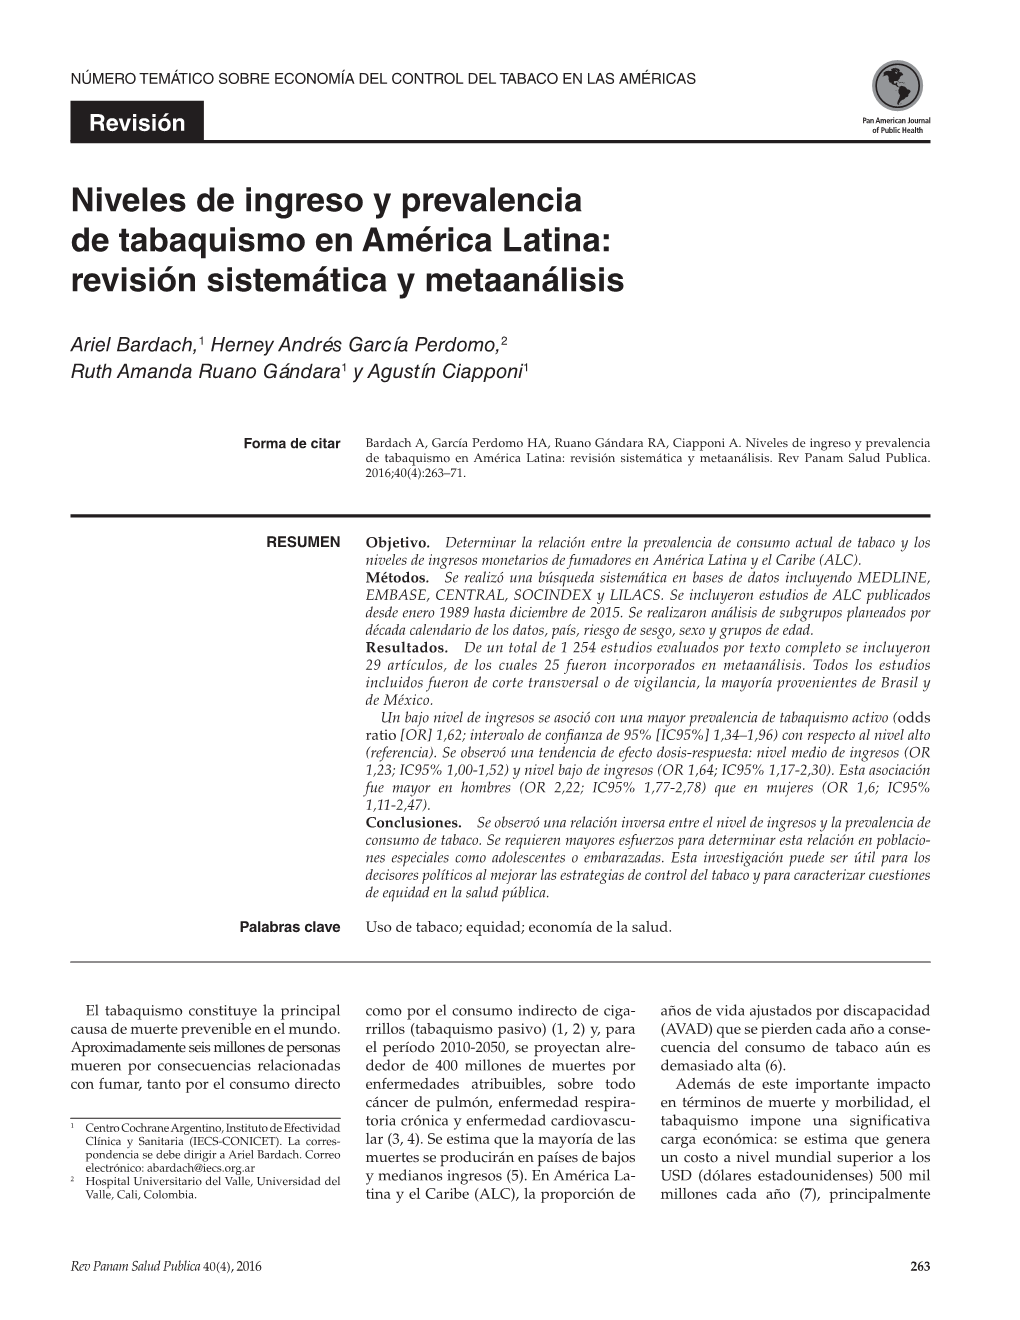 Niveles De Ingreso Y Prevalencia De Tabaquismo En América Latina: Revisión Sistemática Y Metaanálisis